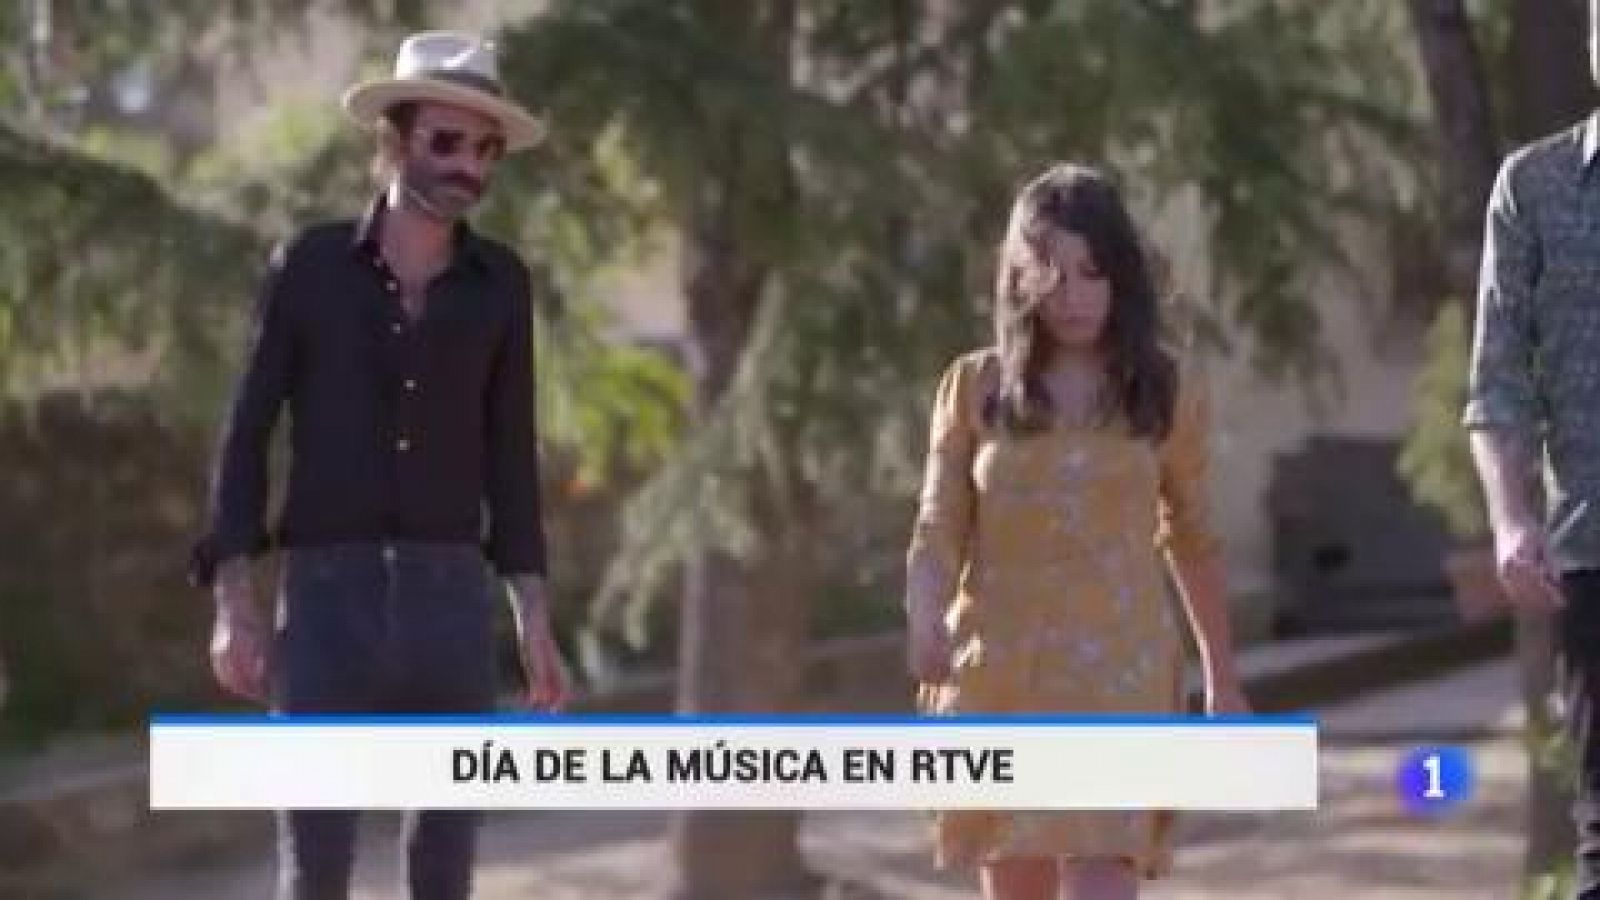 El dia de la música con Leiva en RTVE